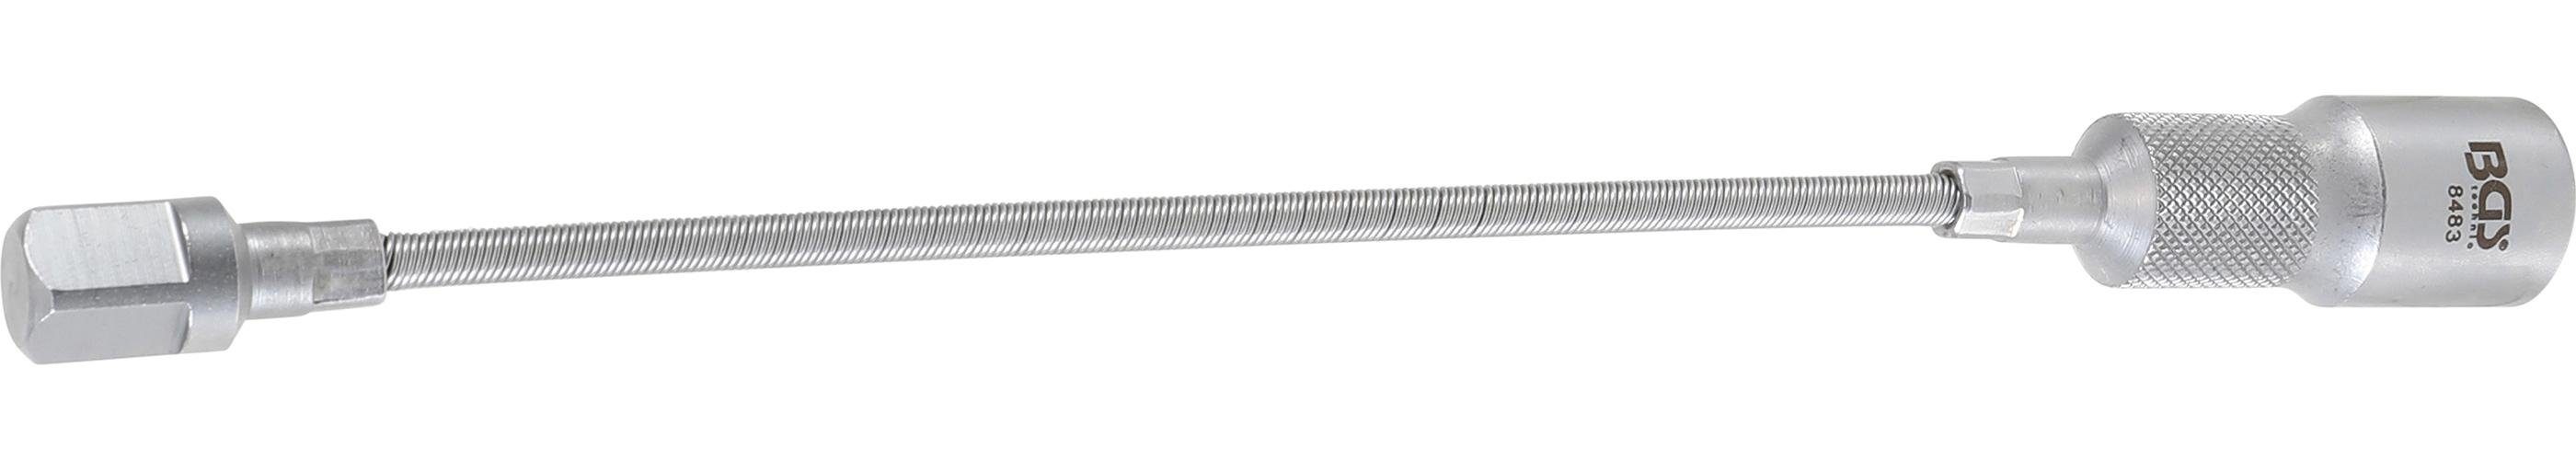 BGS technic Ratschenringschlüssel Flexible Verlängerung, Außen-/Innenvierkant 12,5 mm (1/2), 300 mm